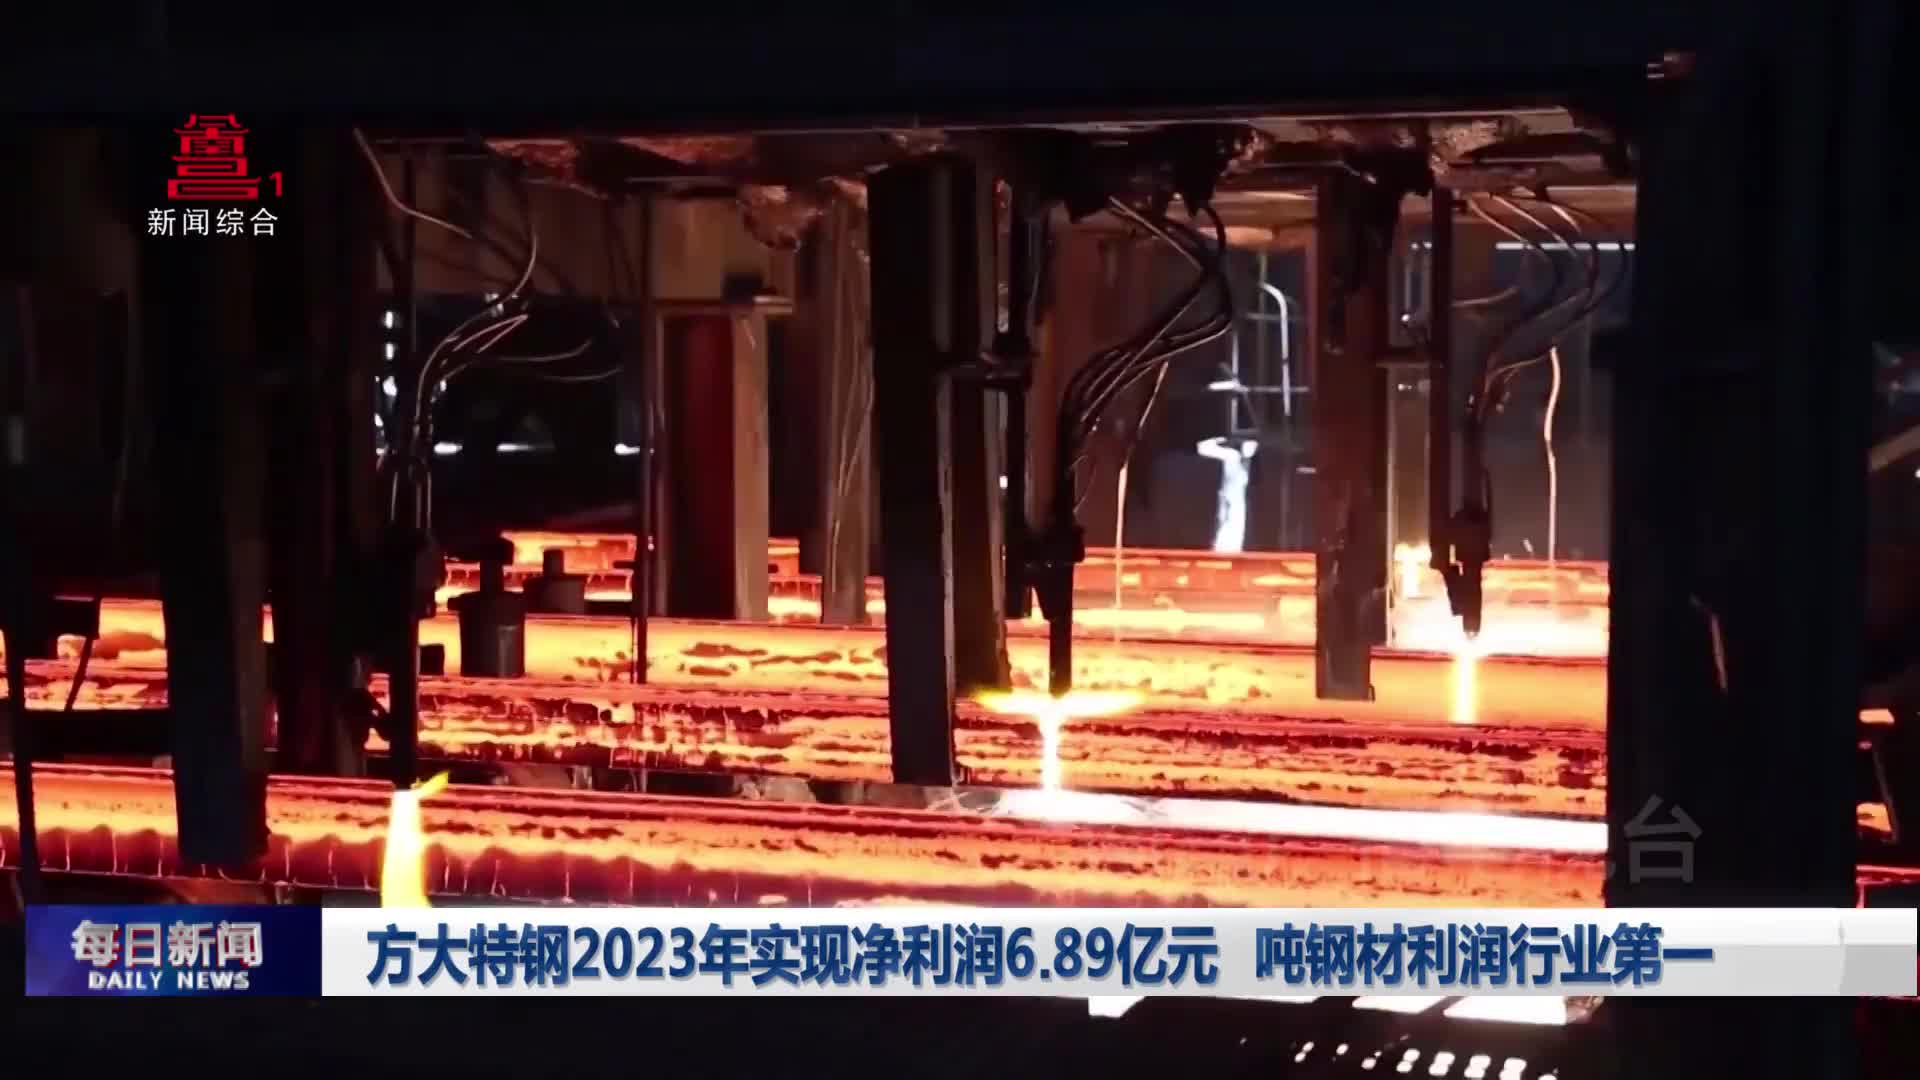 方大特钢2023年实现净利润6.89亿元  吨钢材利润行业第一